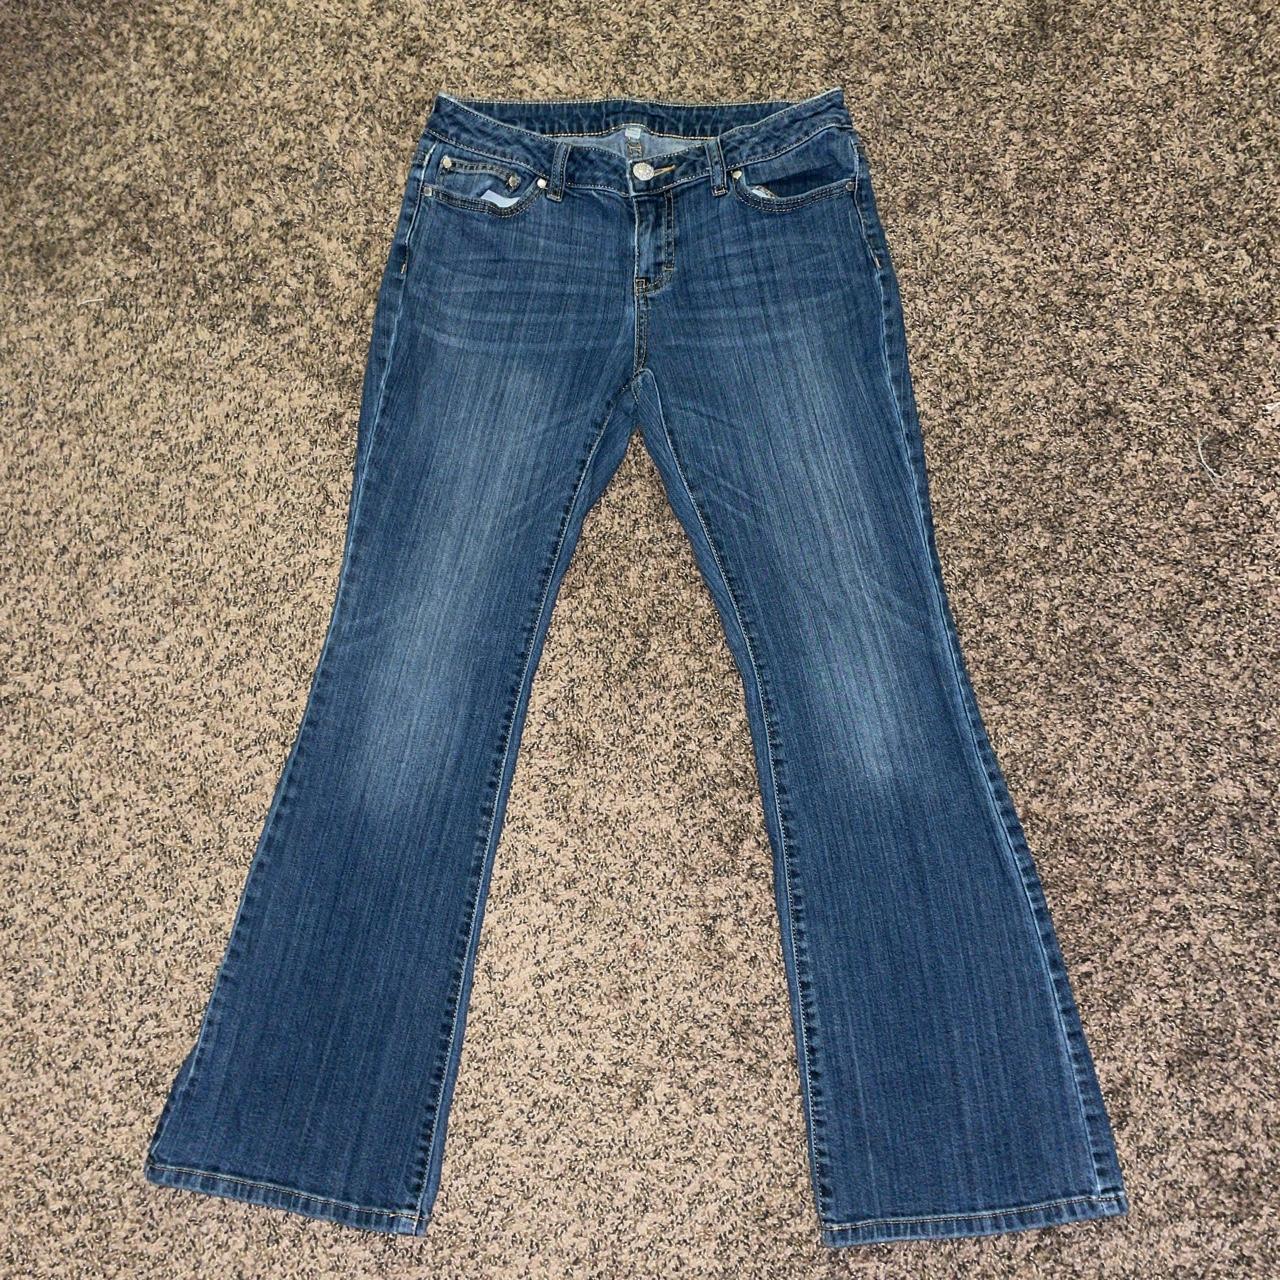 jennifer lopez bootcut jeans: -worn once! -great... - Depop